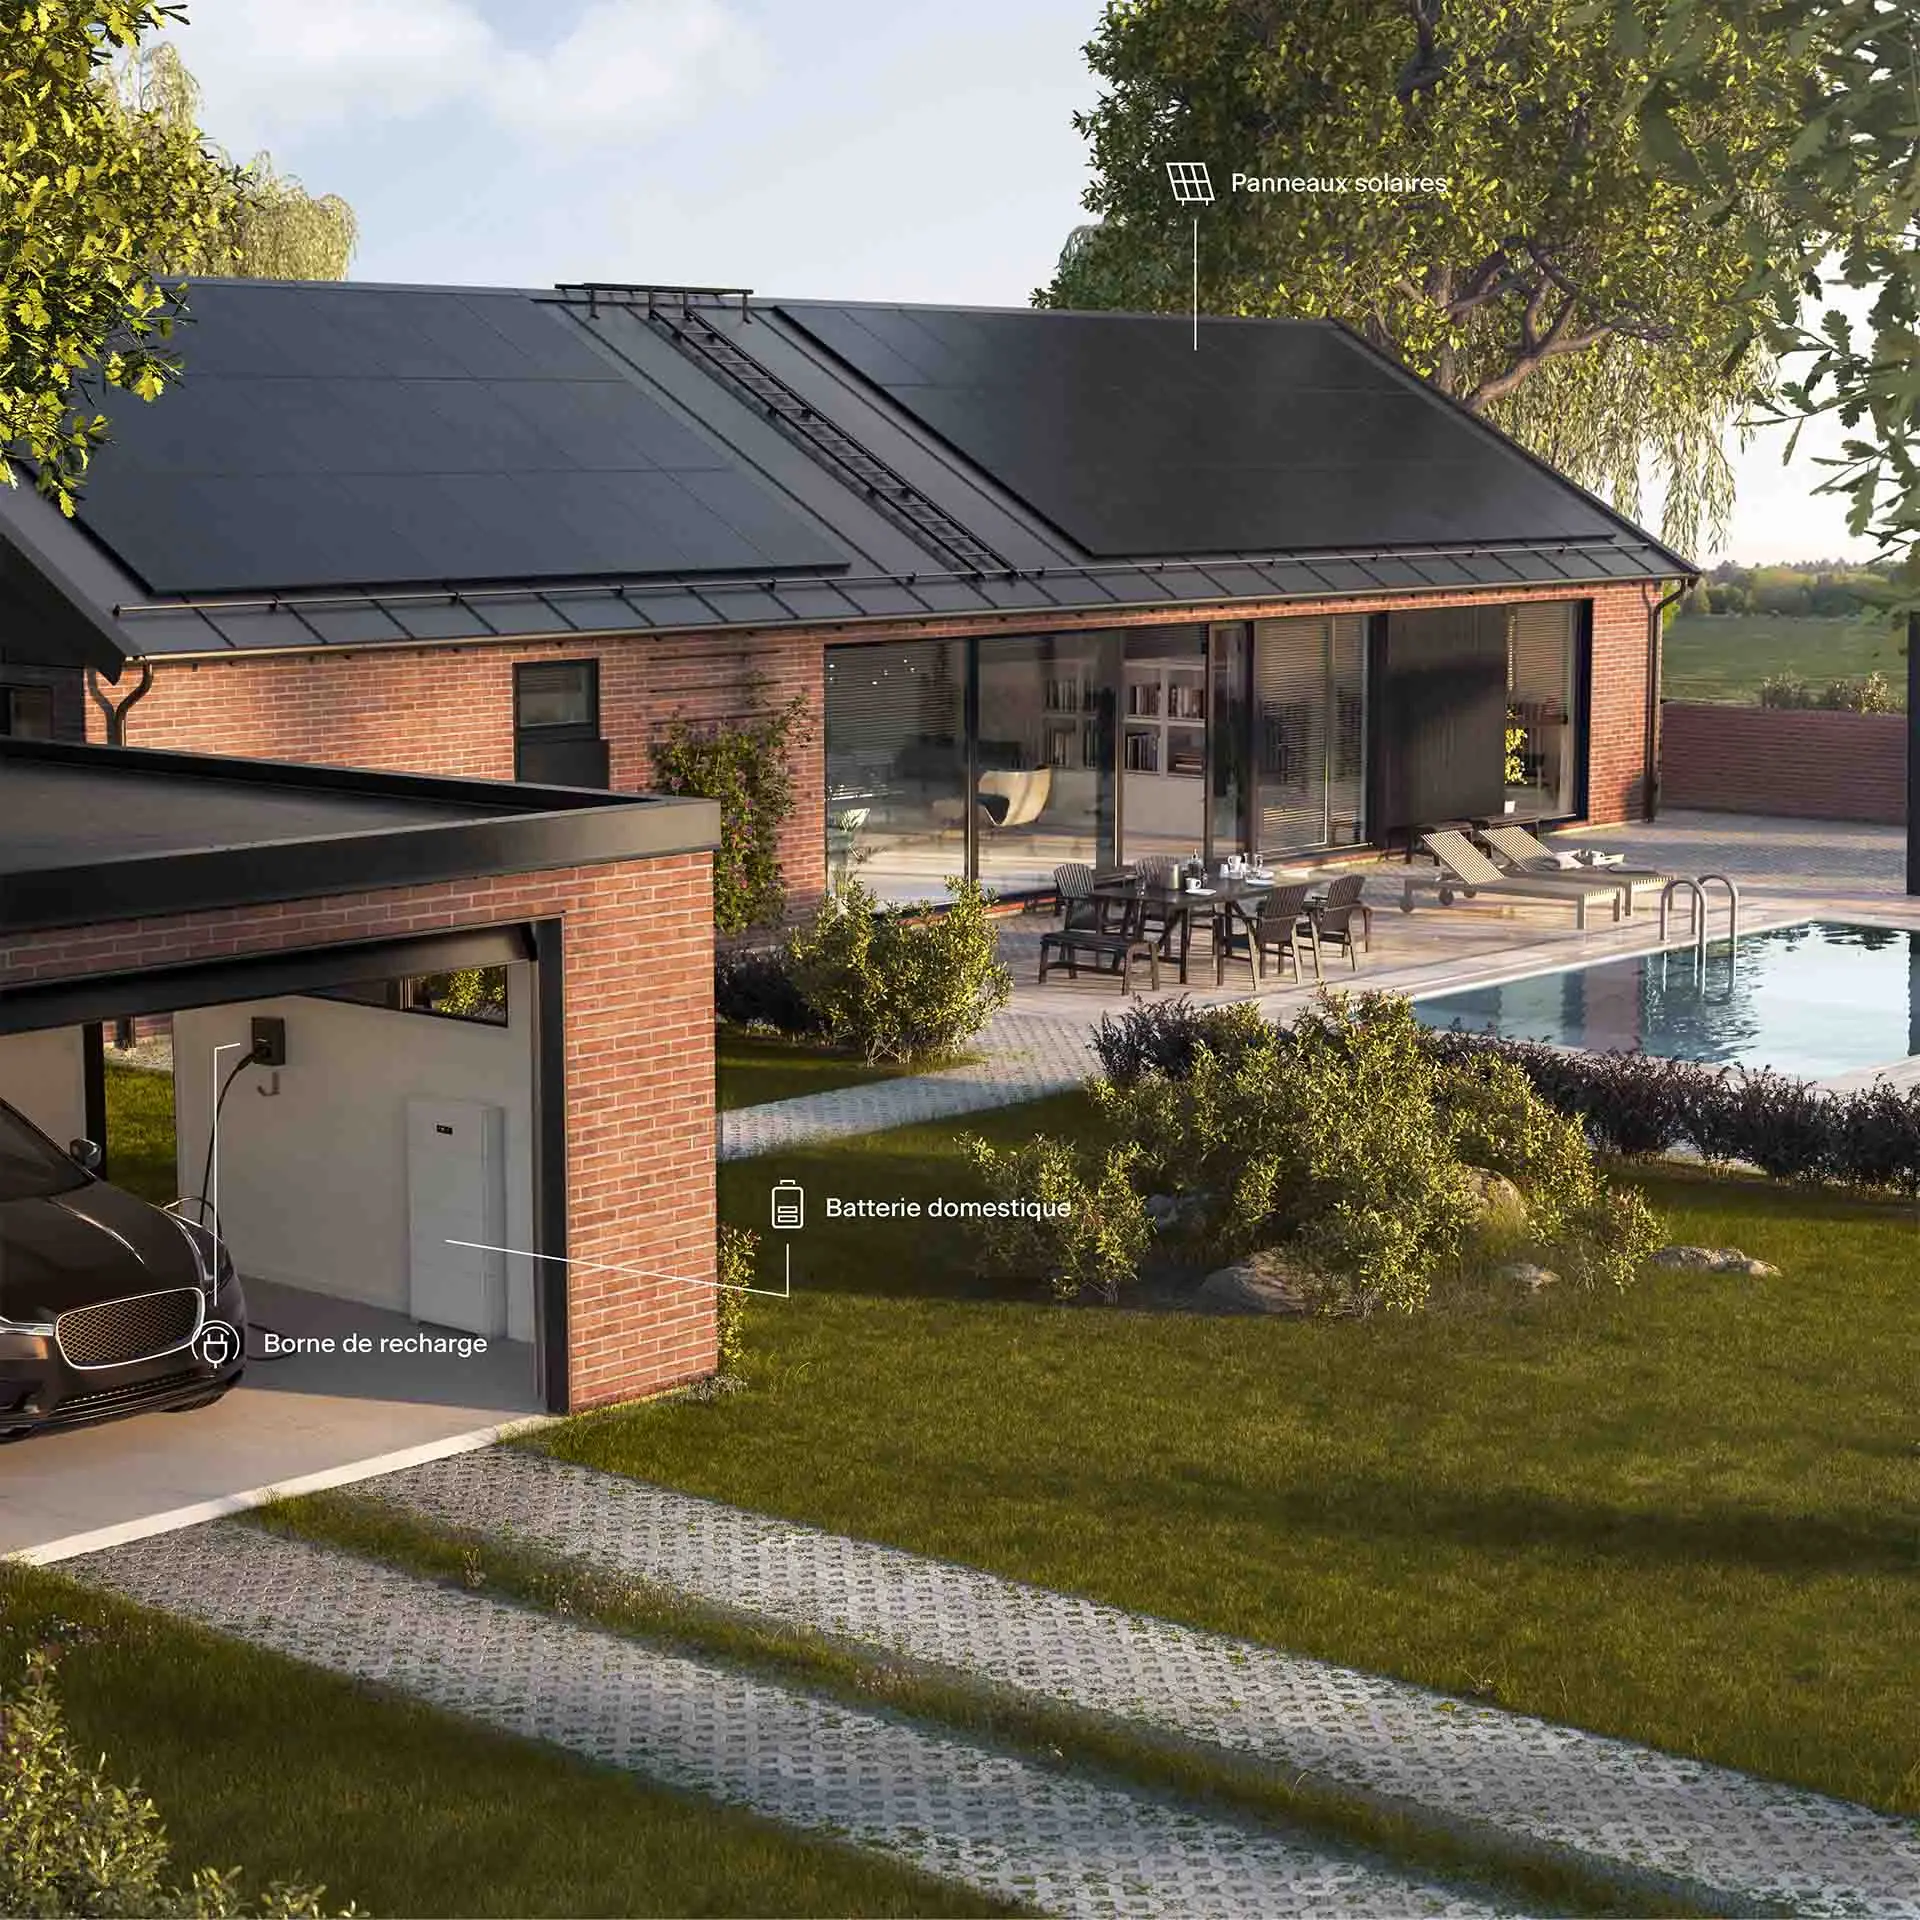 Maison équipée d'une installation solaire complète par Svea Solar : panneaux solaires, batterie domestique, station de charge